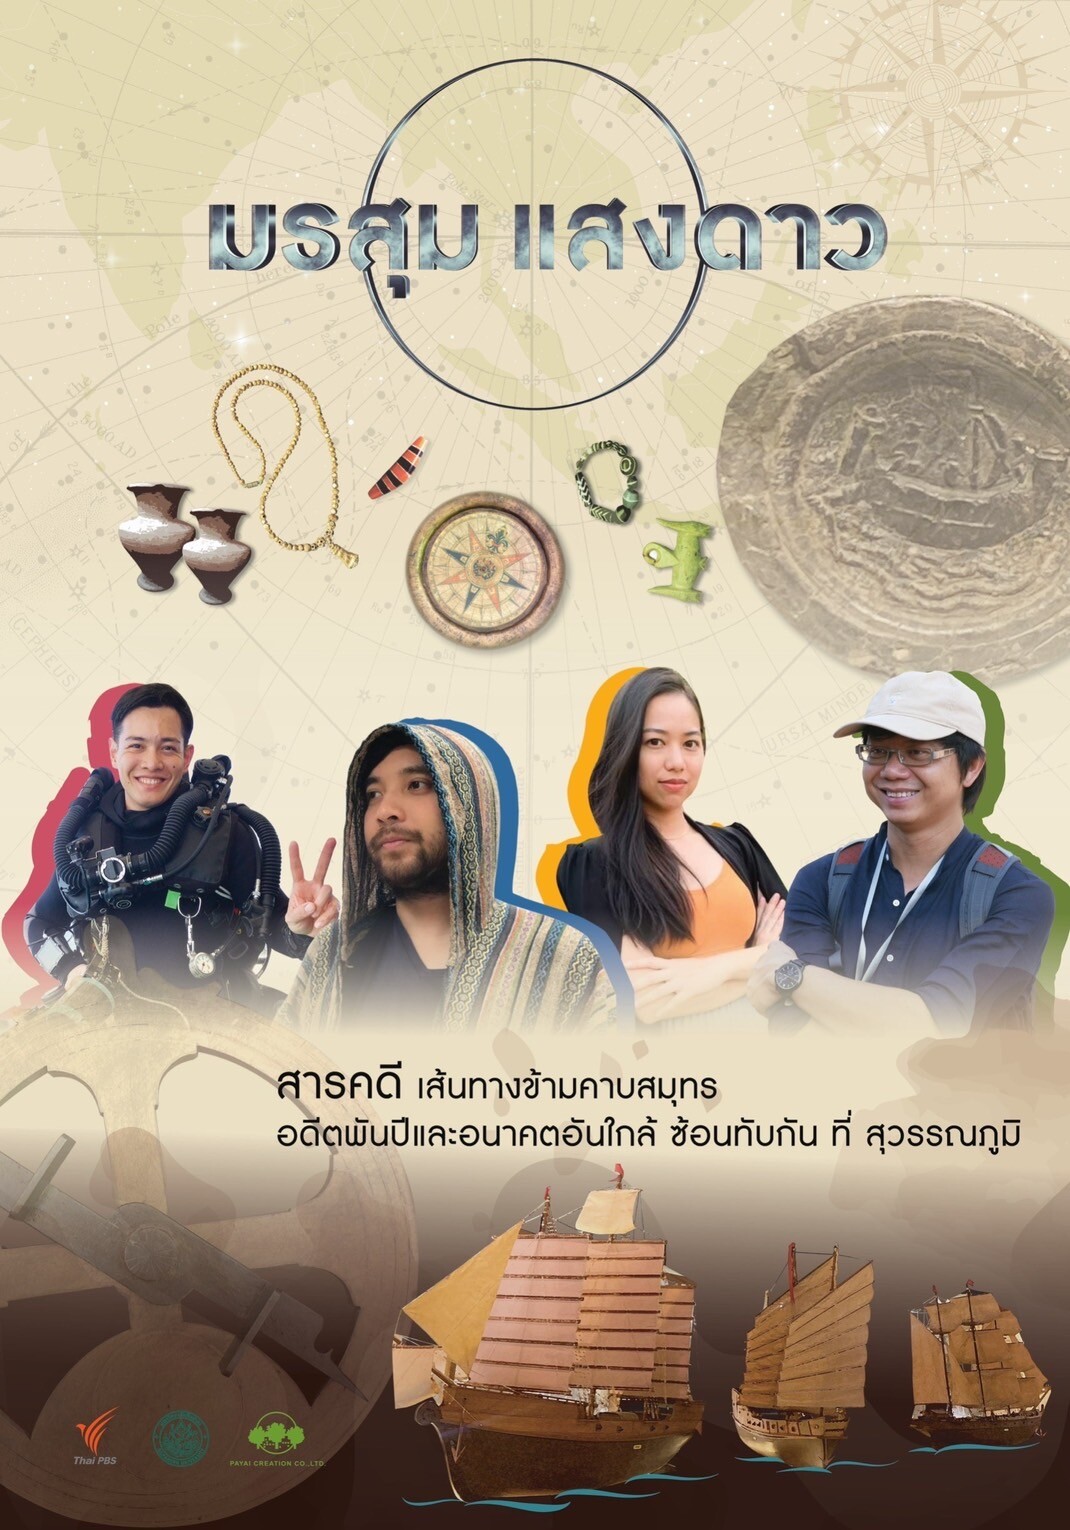 "ธัชชา" ร่วมกับหอภาพยนตร์ (องค์การมหาชน) และมหาวิทยาลัยศิลปากร เตรียมพร้อมจัดงานแสดงนิทรรศการภาพยนตร์ "Into Thai Films by TASSHA ถอดรหัสหนังไทย" ระหว่างวันที่ 5-13 กุมภาพันธ์ 2565